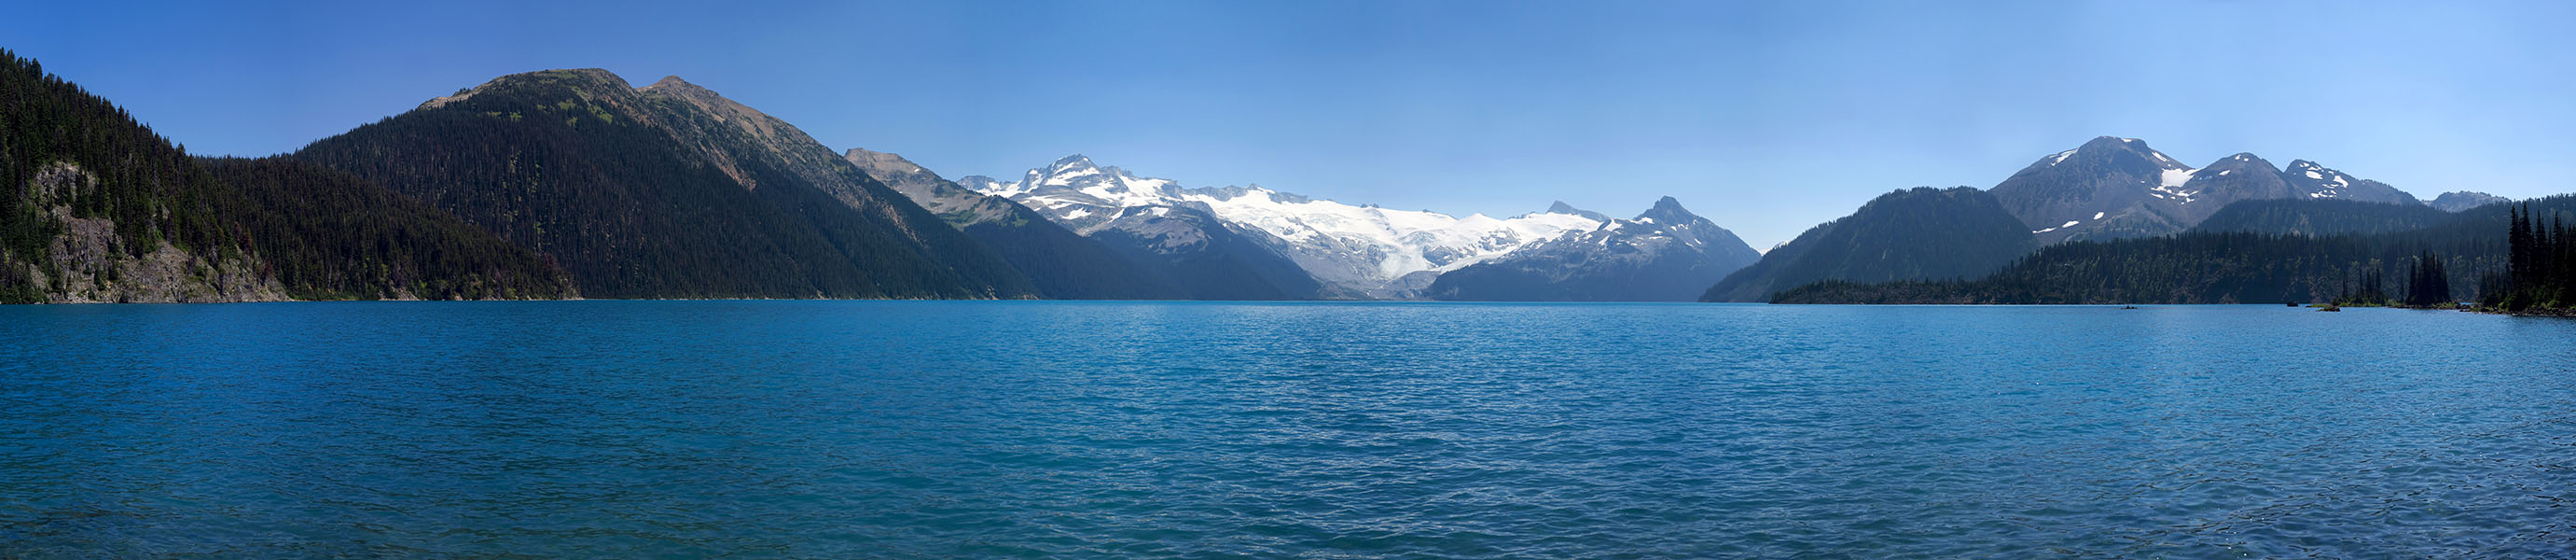 Garibaldi Lake panorama [Garibaldi Lake, Garibaldi Provincial Park, British Columbia, Canada]